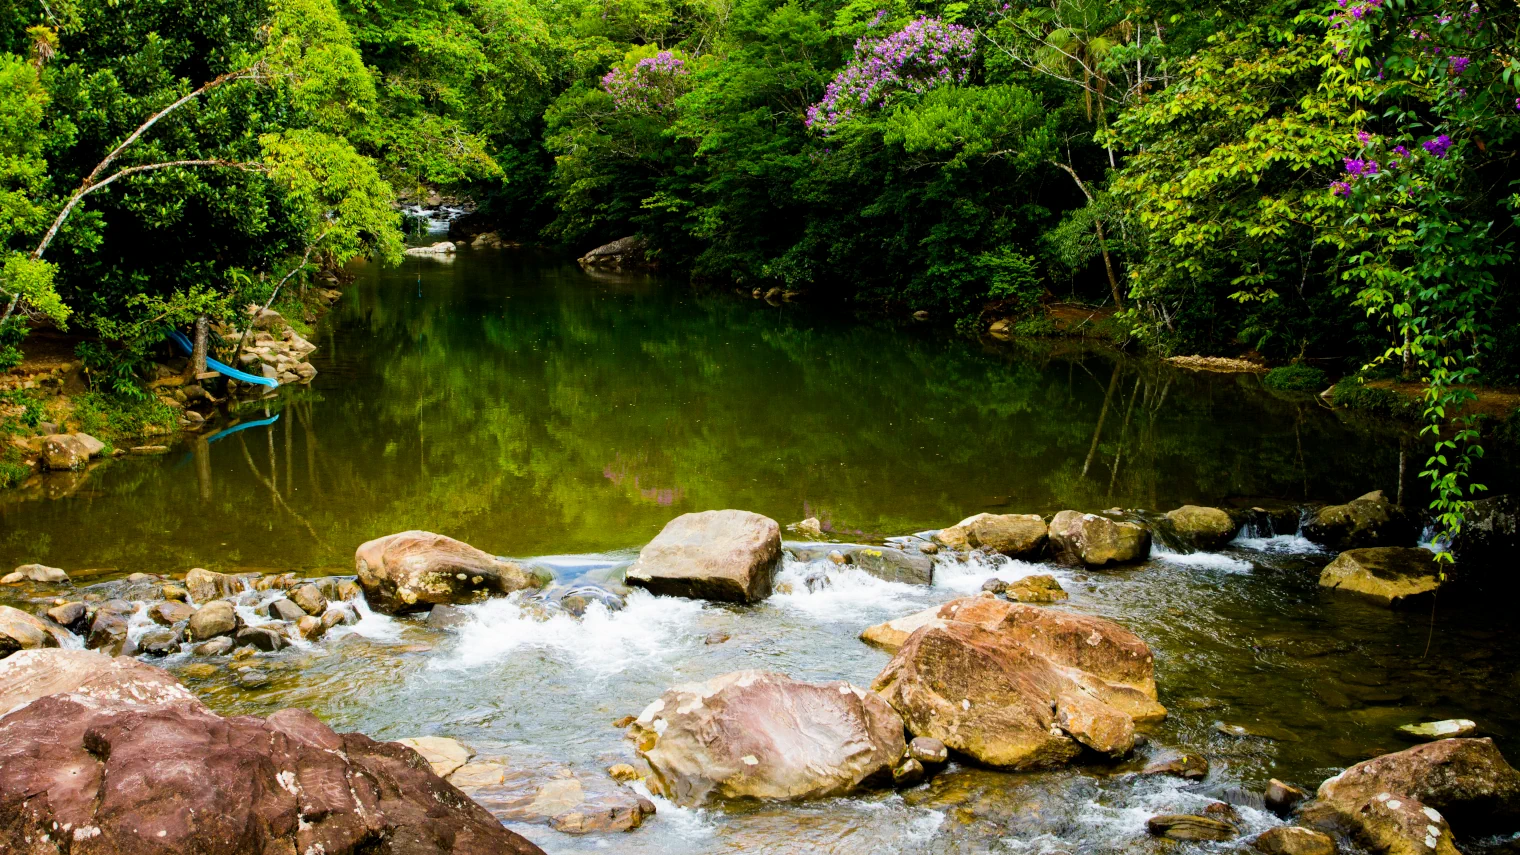 Cachoeira do Perequê em Peruíbe, com seu espelho d'água cercado por árvores e muita natureza.